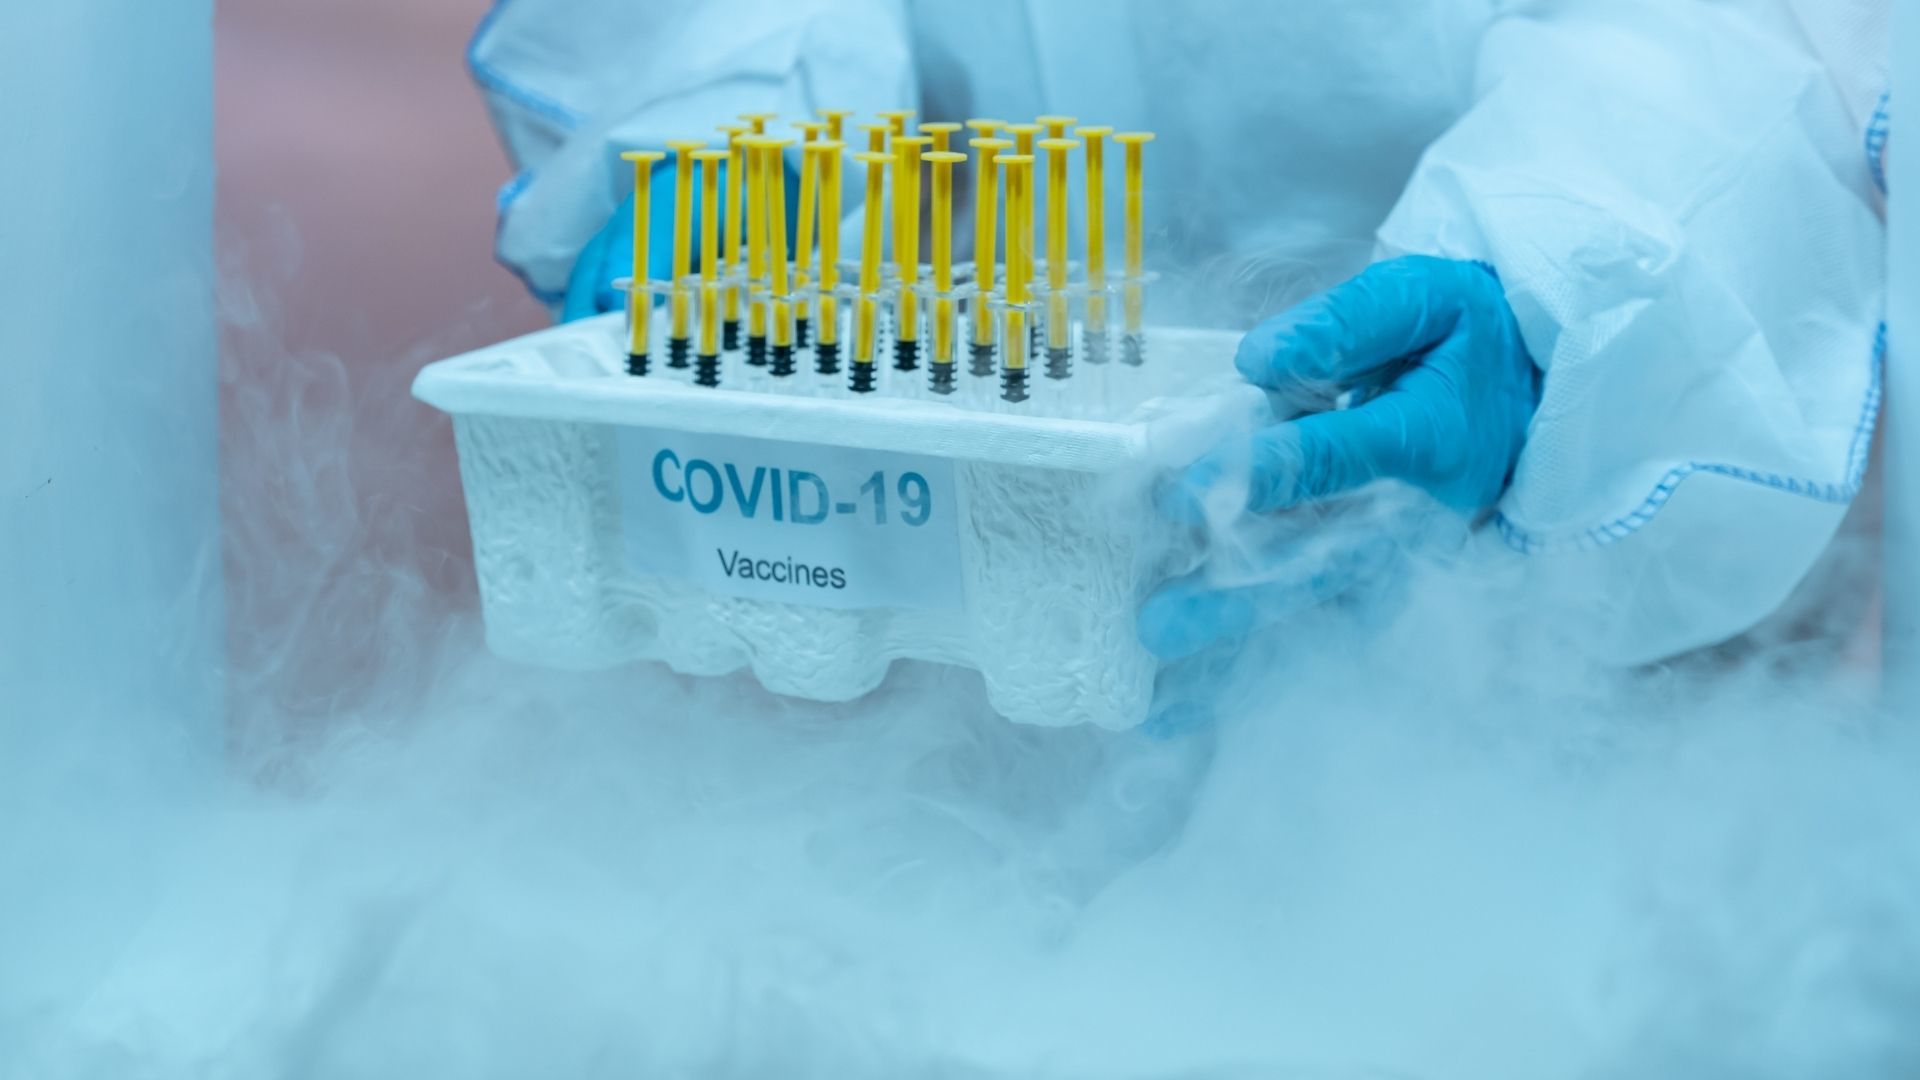 Teplotu při uskladnění léků ohlídá IoT senzor, který funguje ipři teplotách hluboko pod nulou